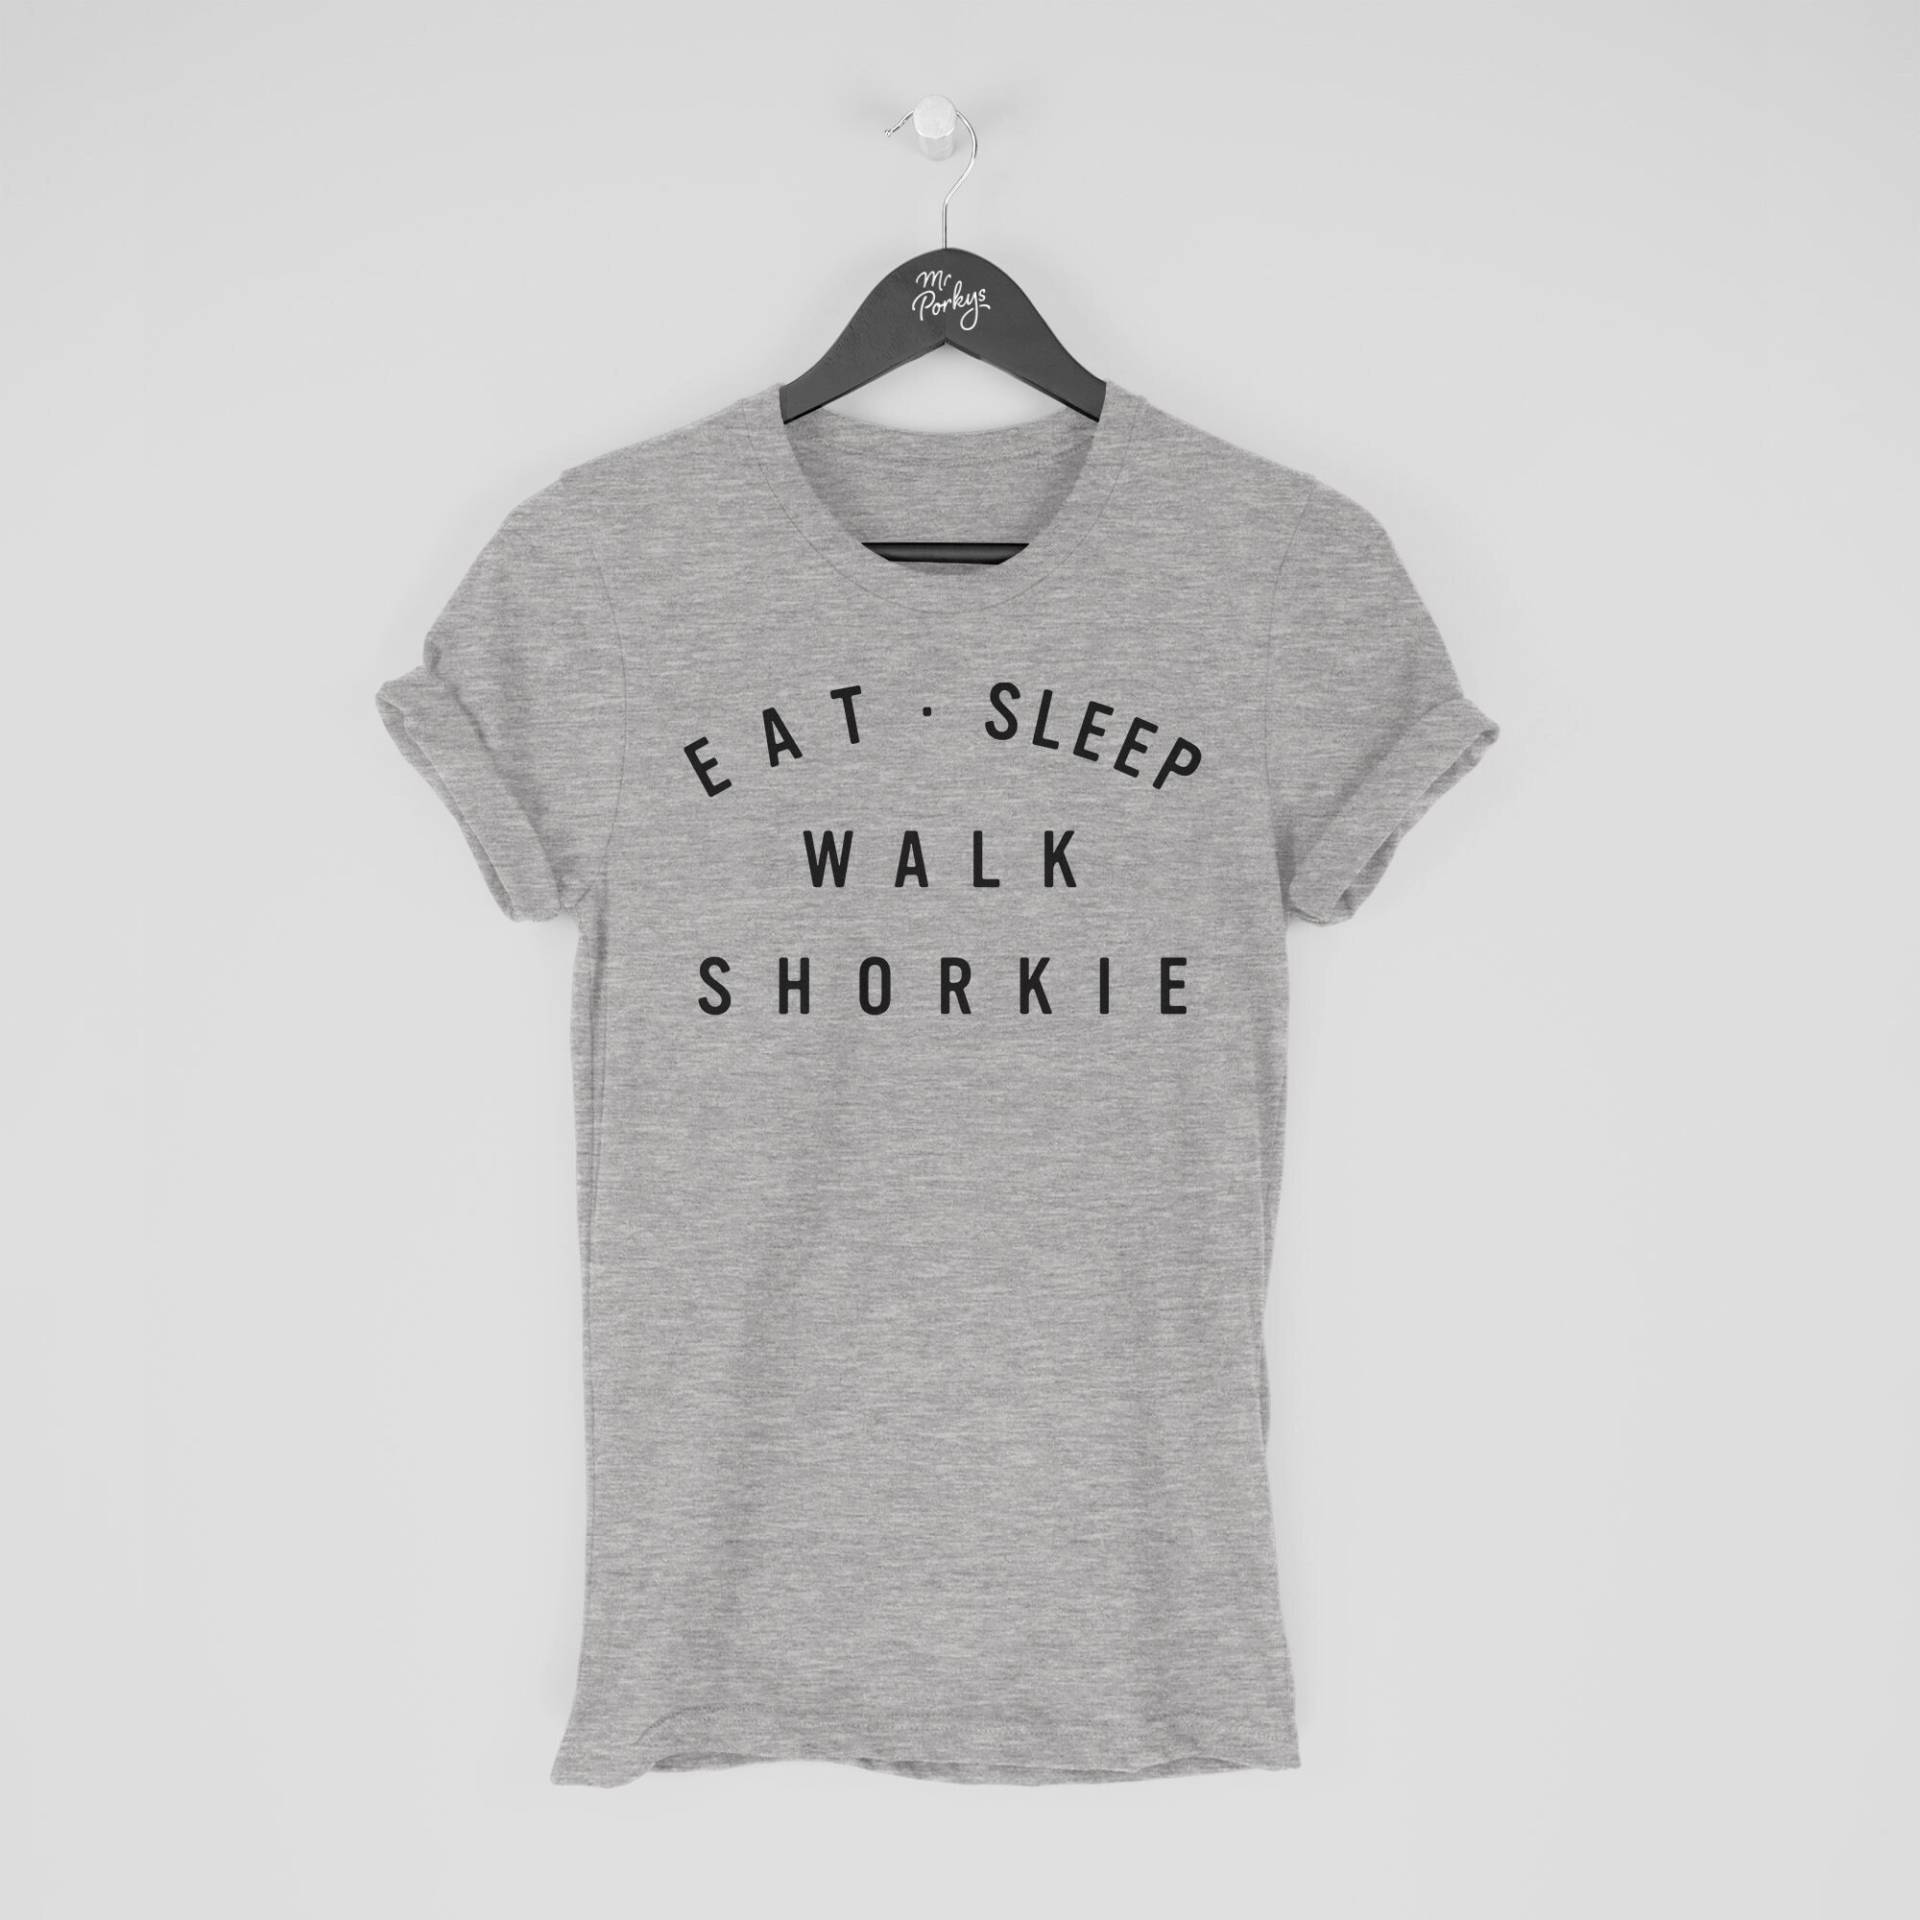 Shorkie Shirt, Eat Sleep Walk T-Shirt, Geschenk Für Besitzer, Tshirt von MrPorkysGiftShop